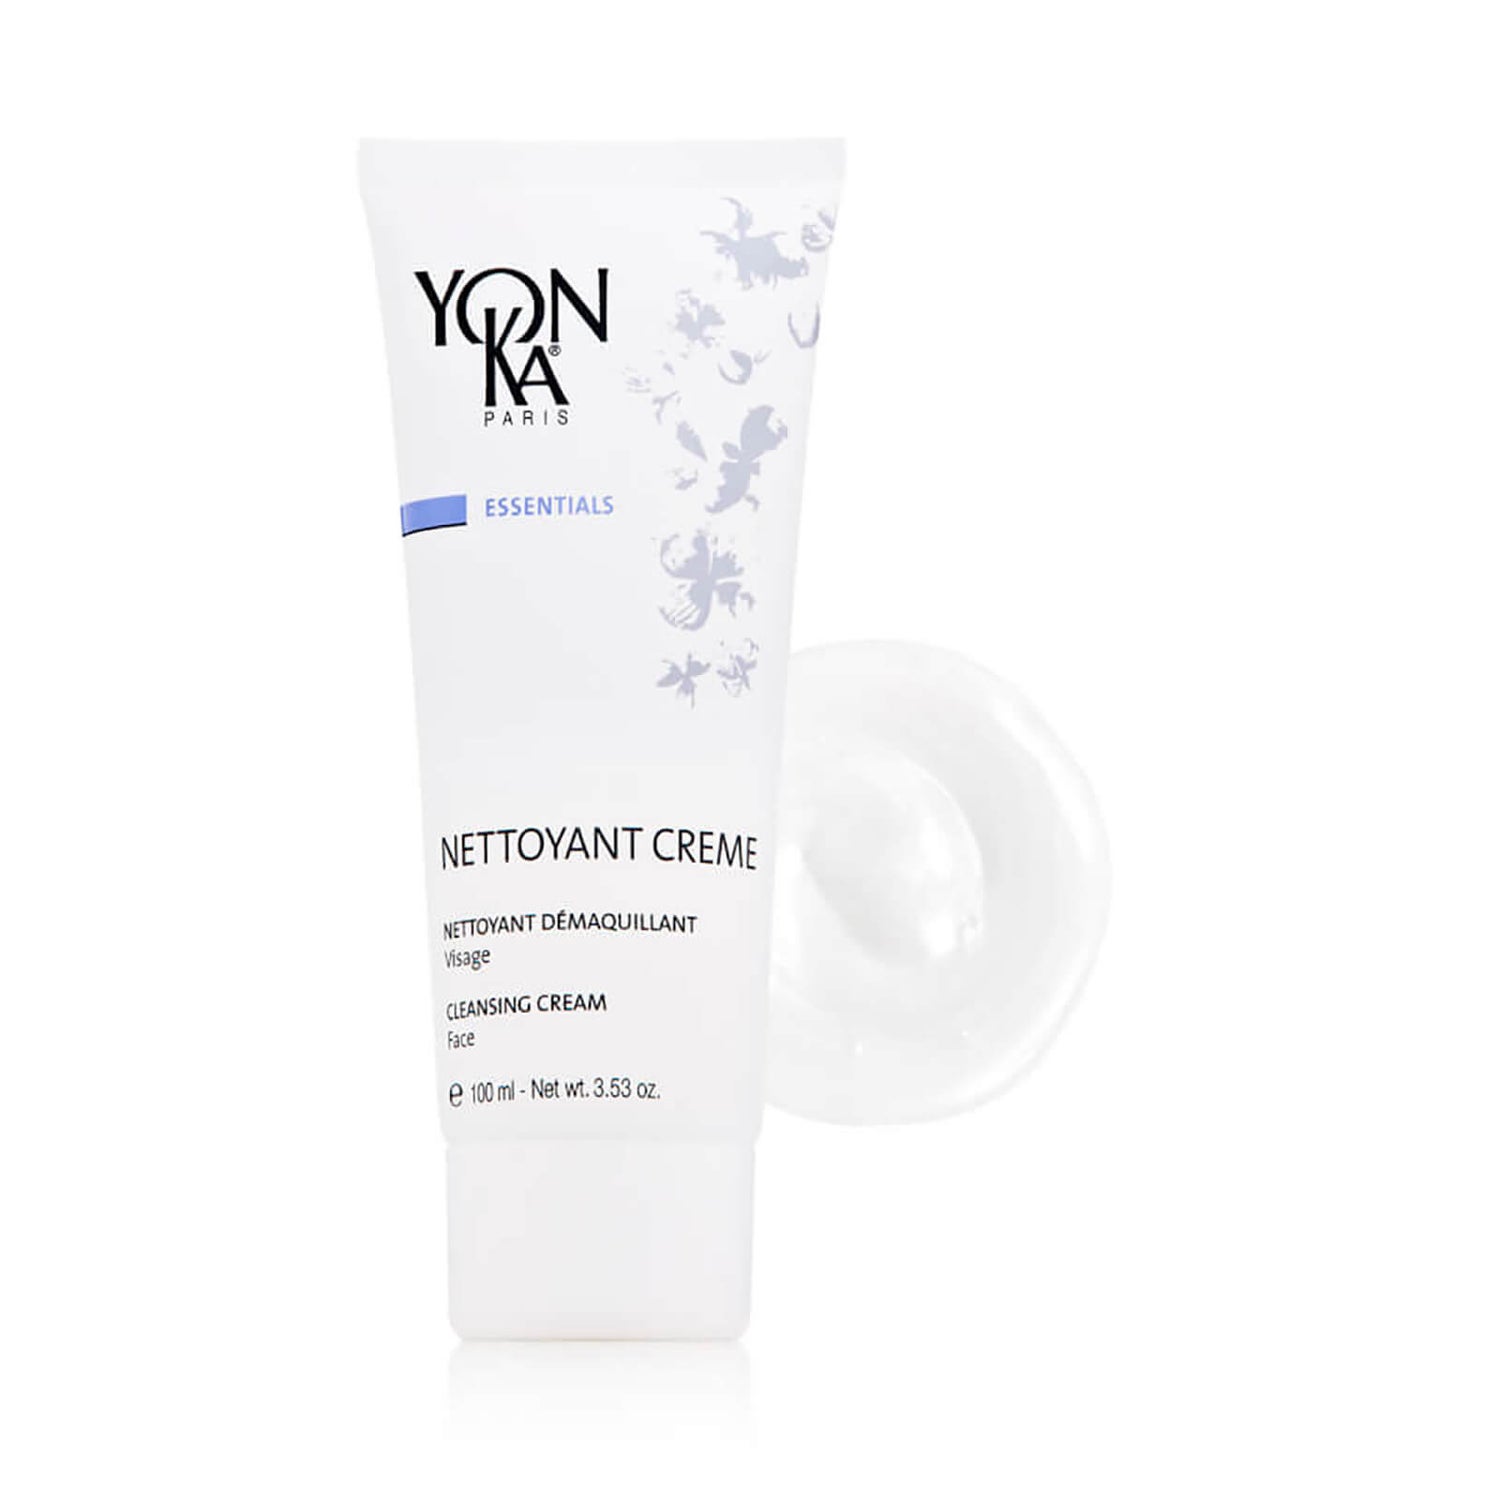 Yon-Ka Paris Skincare Nettoyant Creme